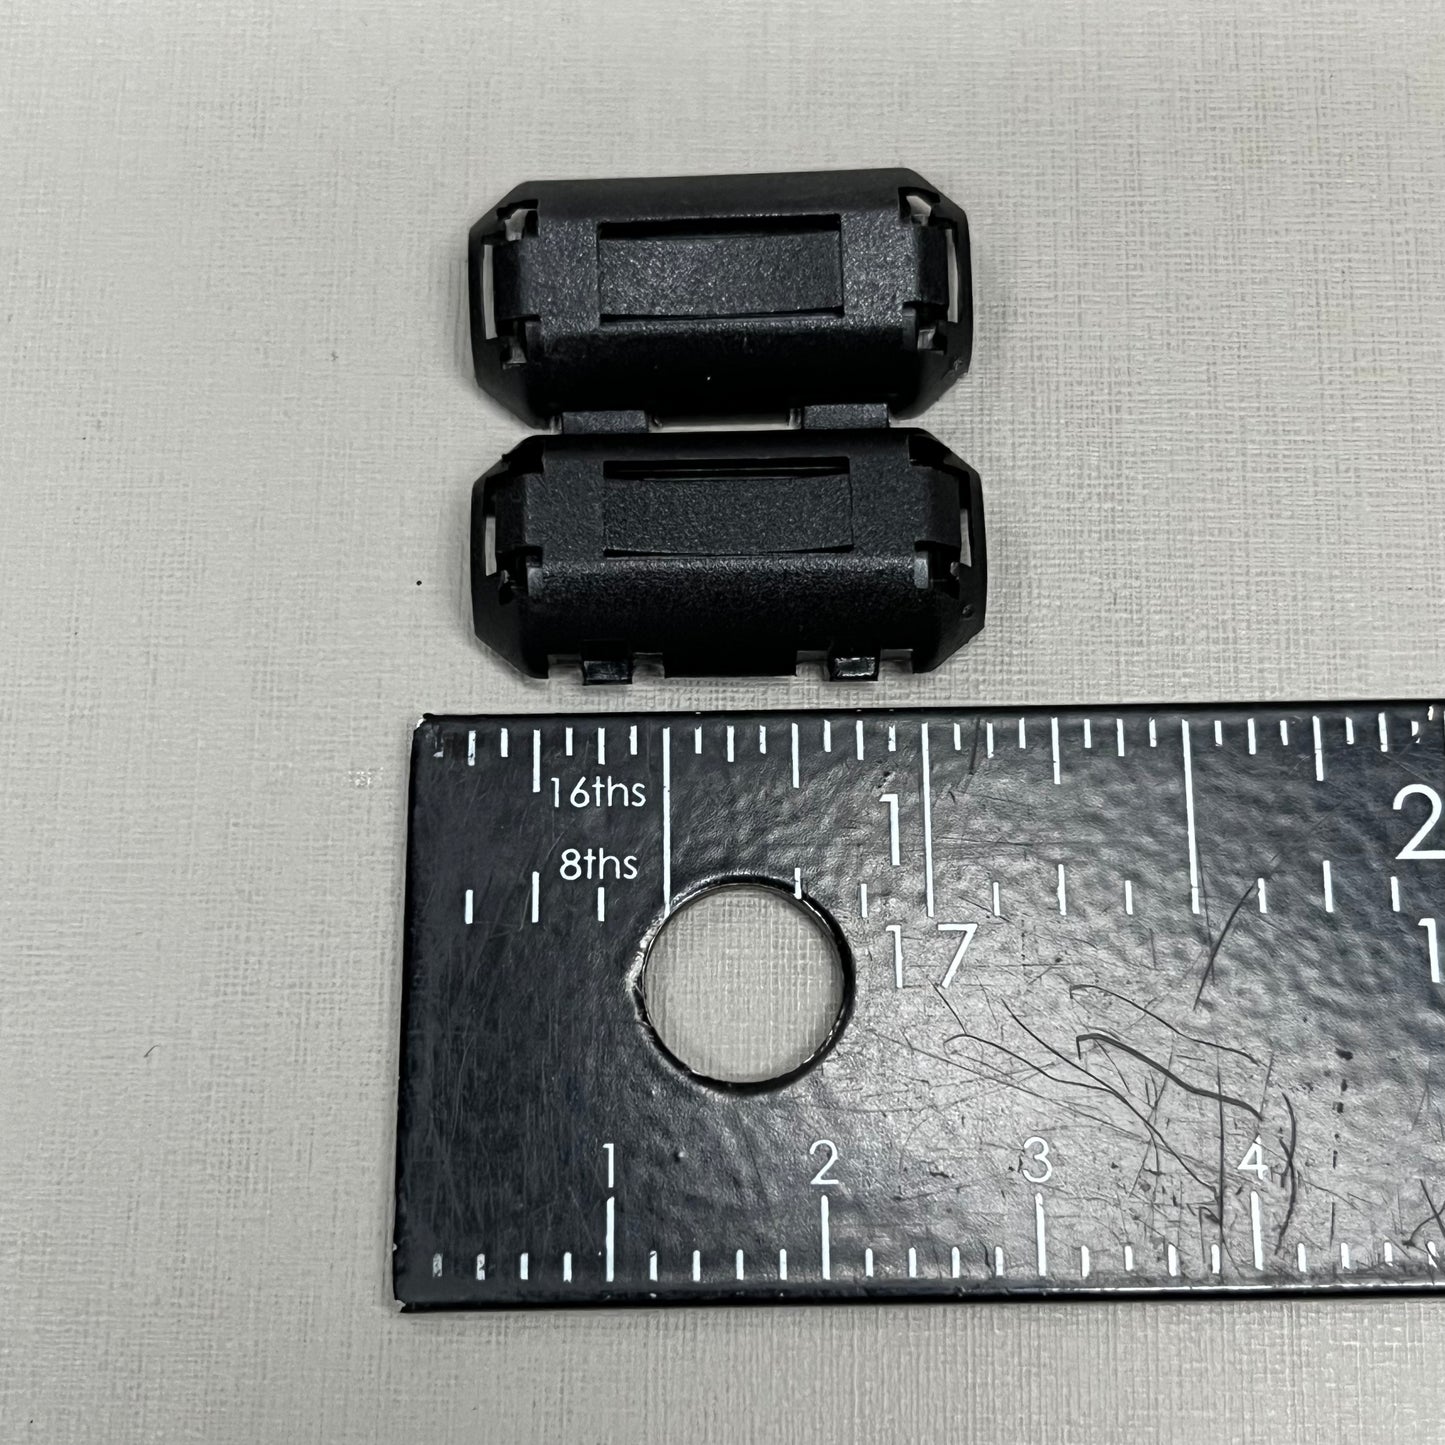 HUAREW Clip-on Ferrite Ring Core RFI EMI Nose Suppressor Cable Clip 5-28 Pieces (New)